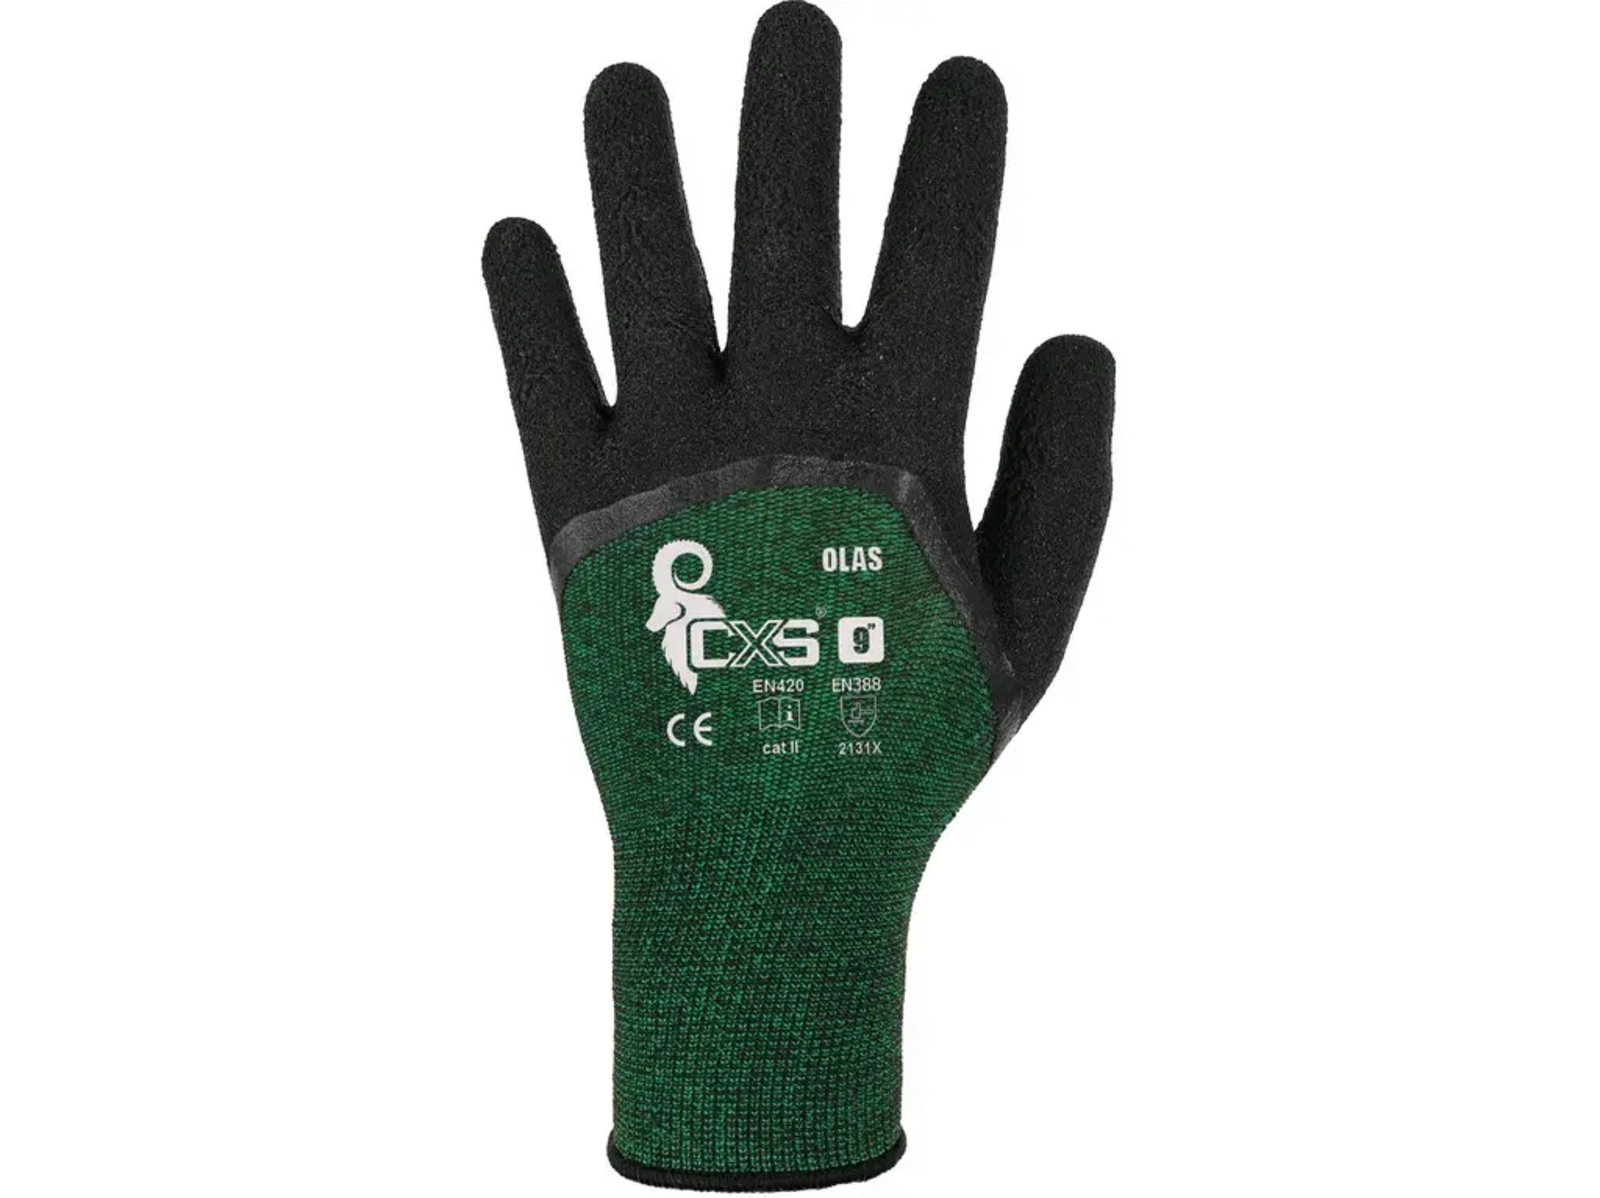 Povrstvené rukavice CXS Olas - veľkosť: 6/7, farba: zelená/čierna